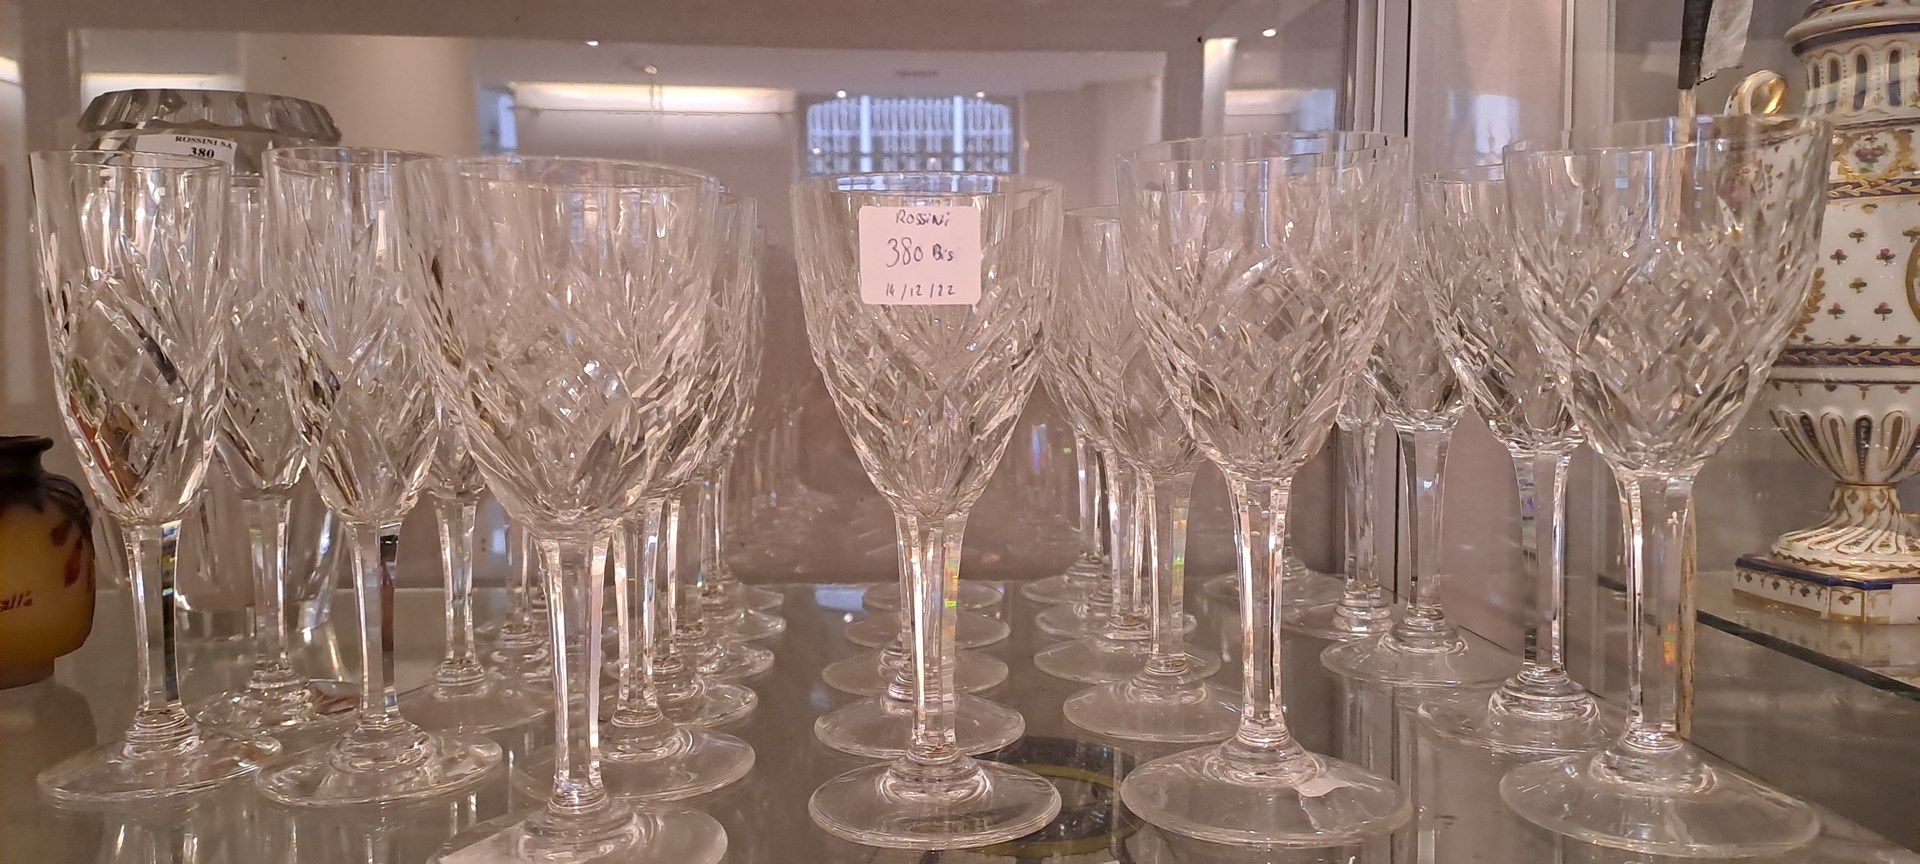 Null 圣卢斯
玻璃套装模型 "Chantilly "的一部分，由11个红酒杯，11个香槟酒杯和6个白酒杯组成。